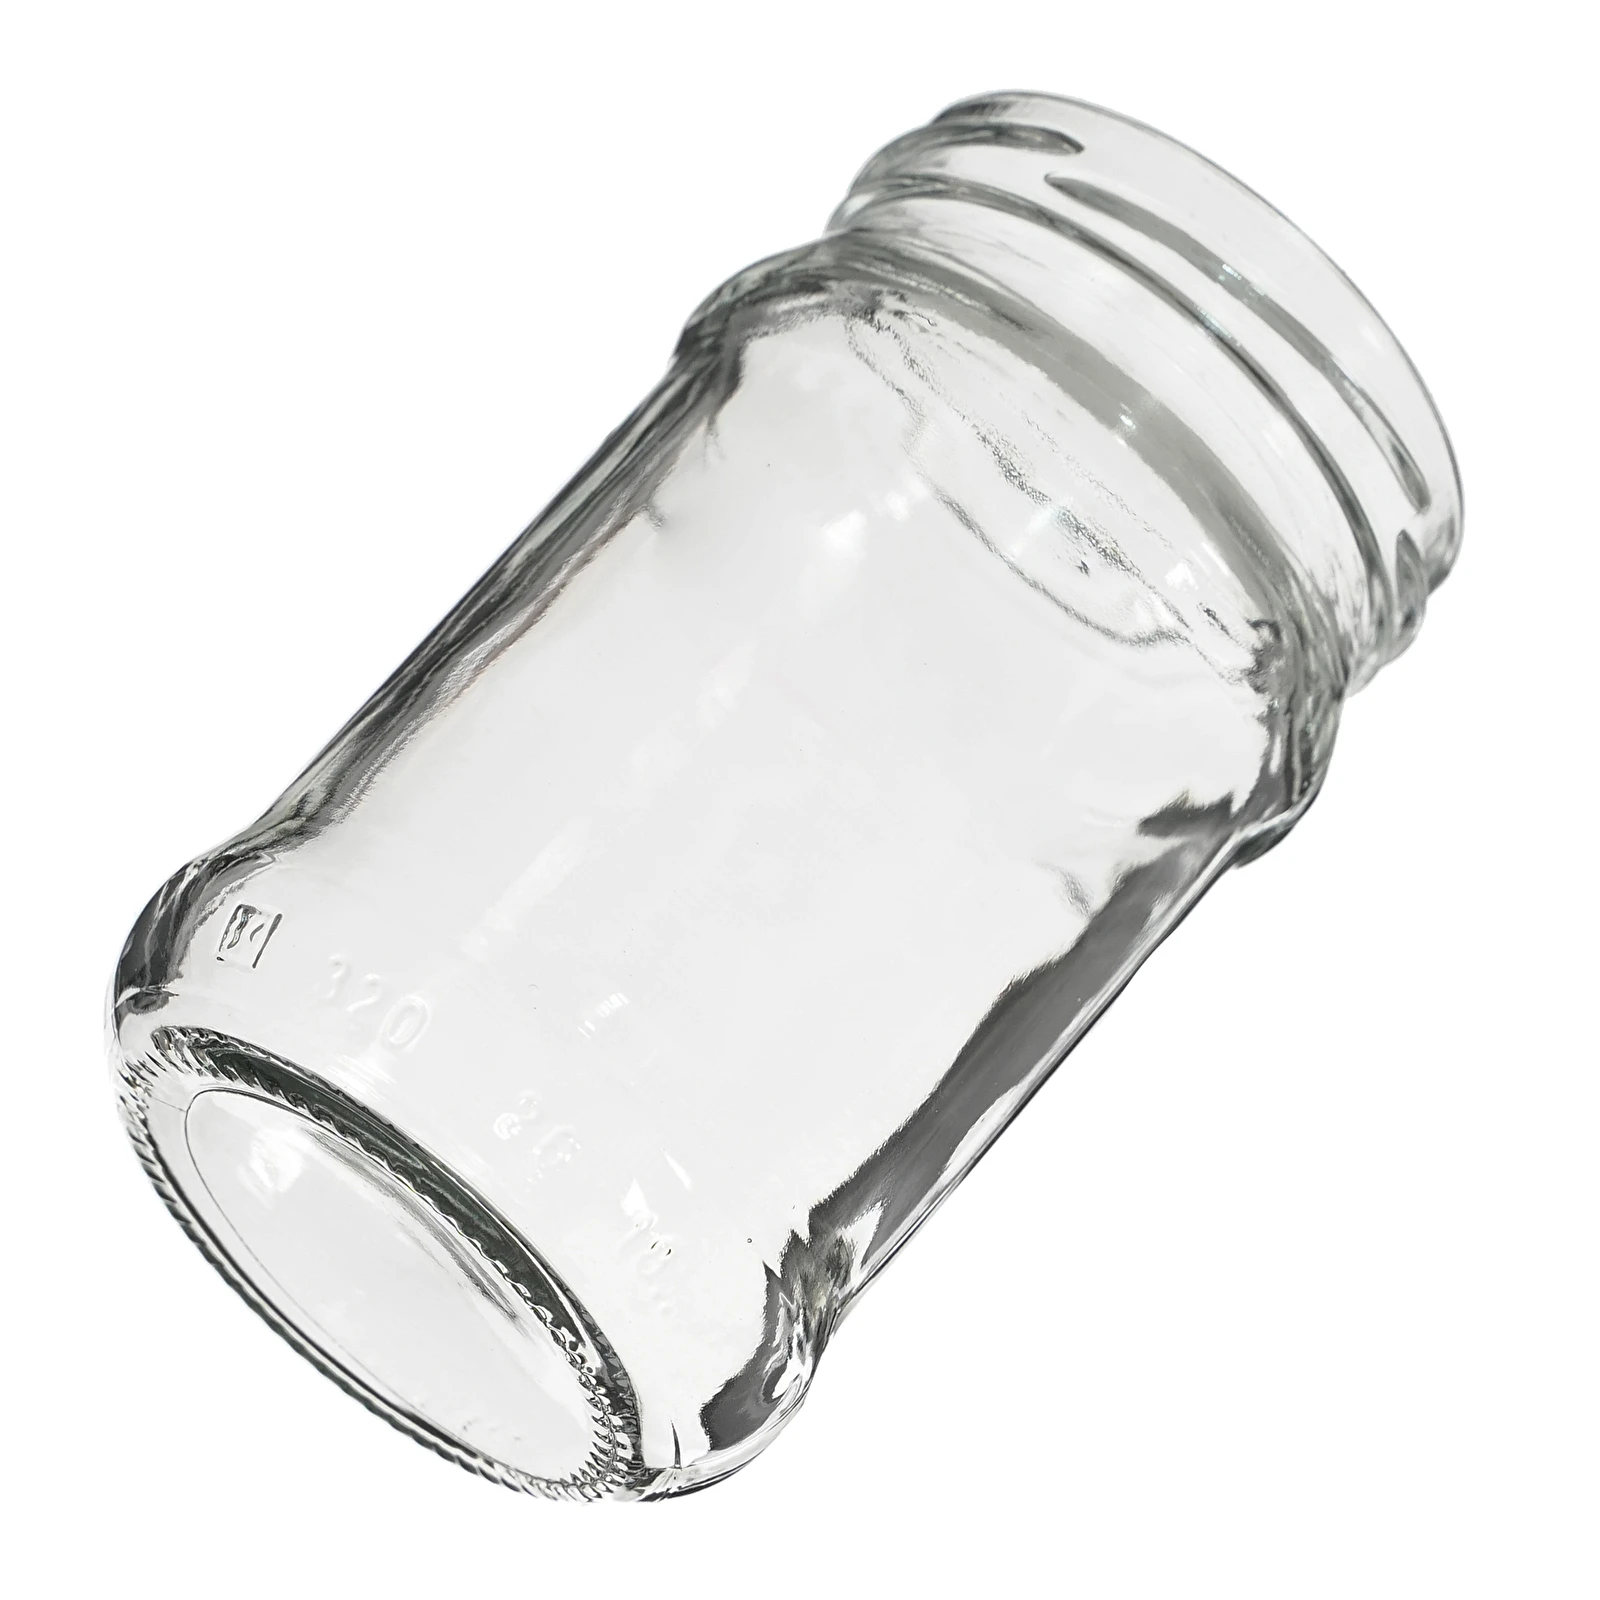 Glass jar 0,240 L twist-off 66 mm